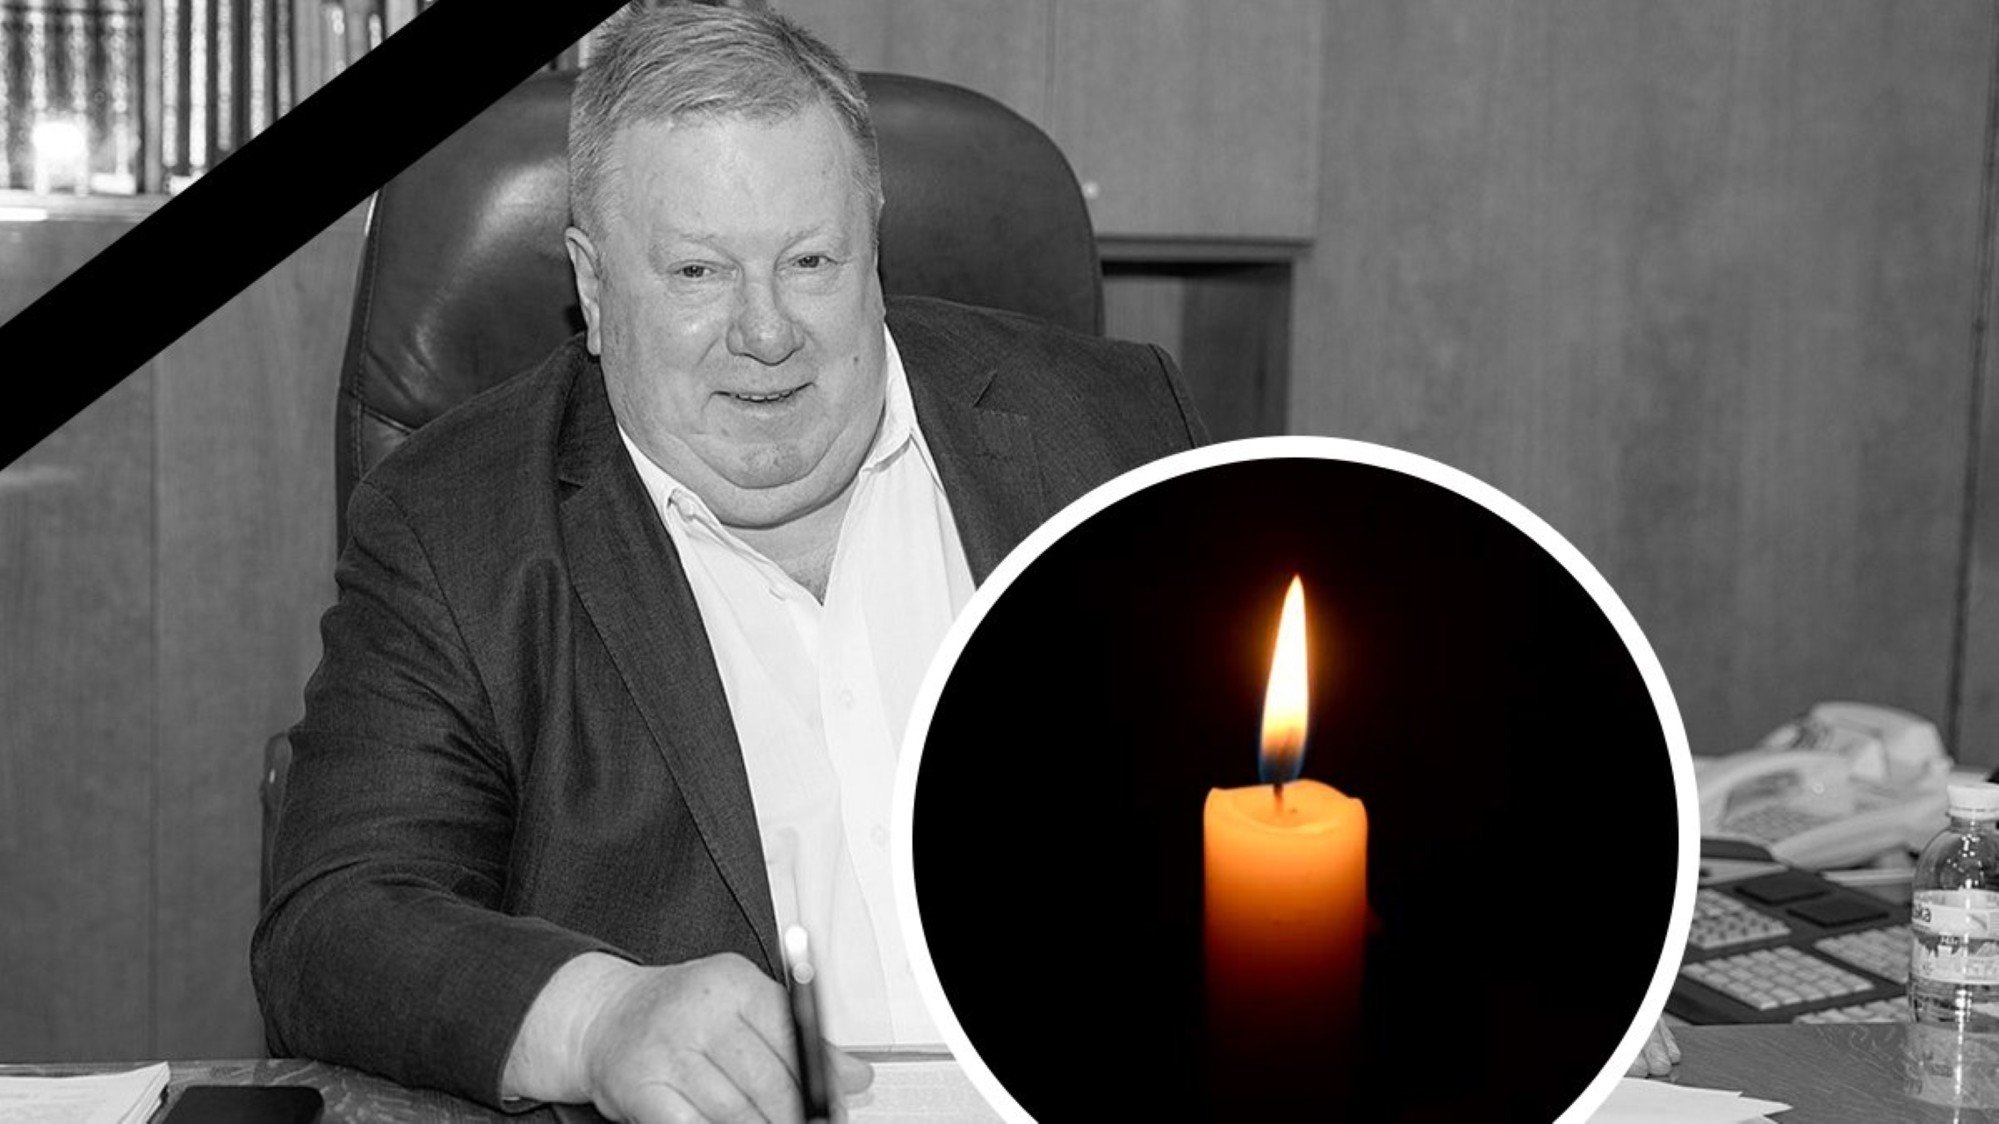 Умерший гендиректор КБ "Южное" станет Героем Украины